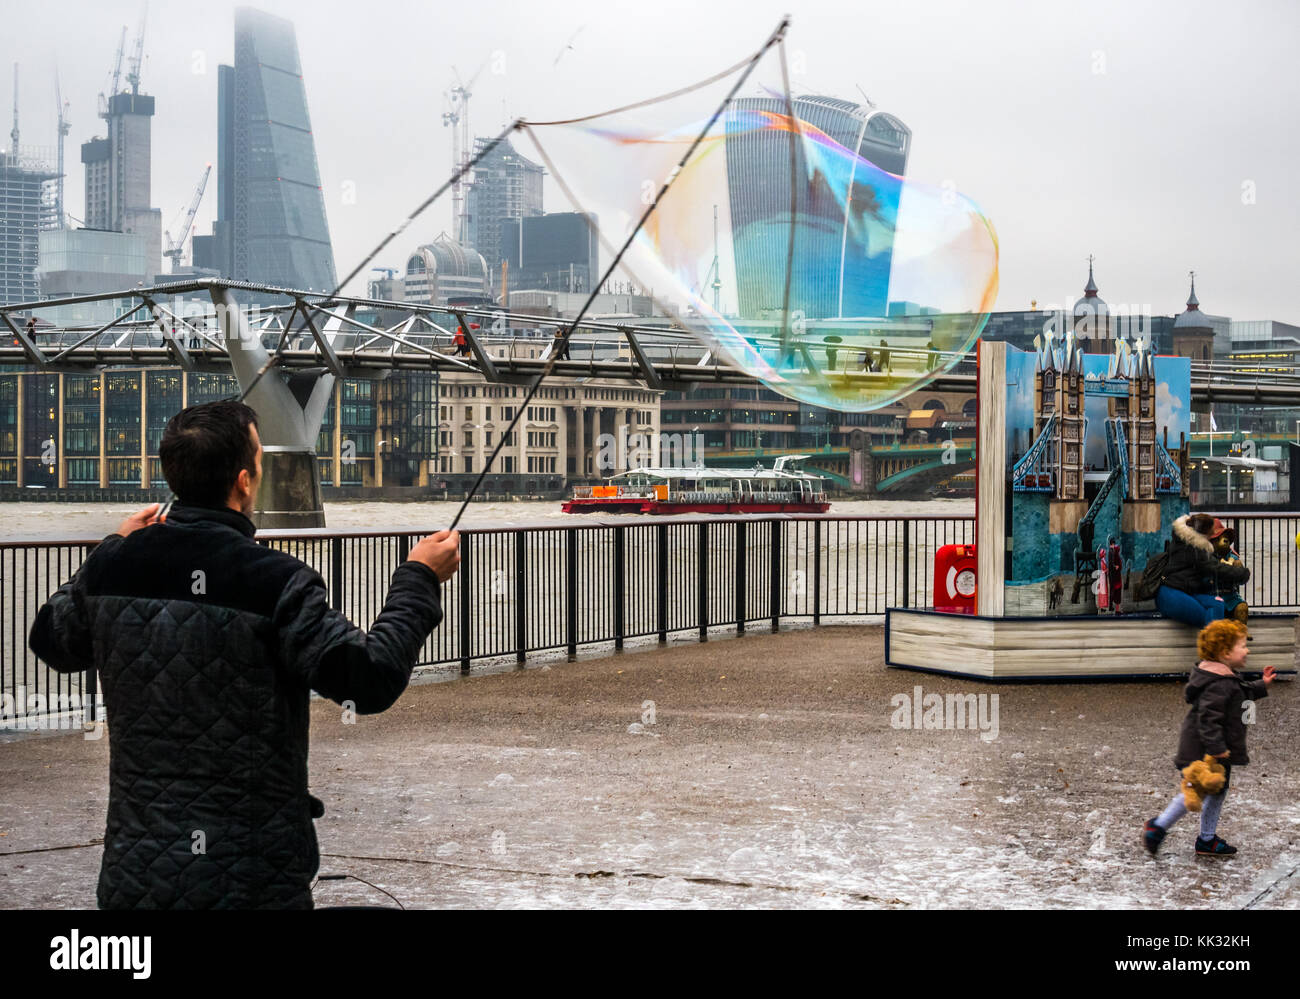 La orilla sur del río Támesis entretenido sendero, el hombre de los niños y las personas con burbujas, Londres, Inglaterra, Reino Unido con el Puente del Milenio y pop hasta Paddington bear Foto de stock